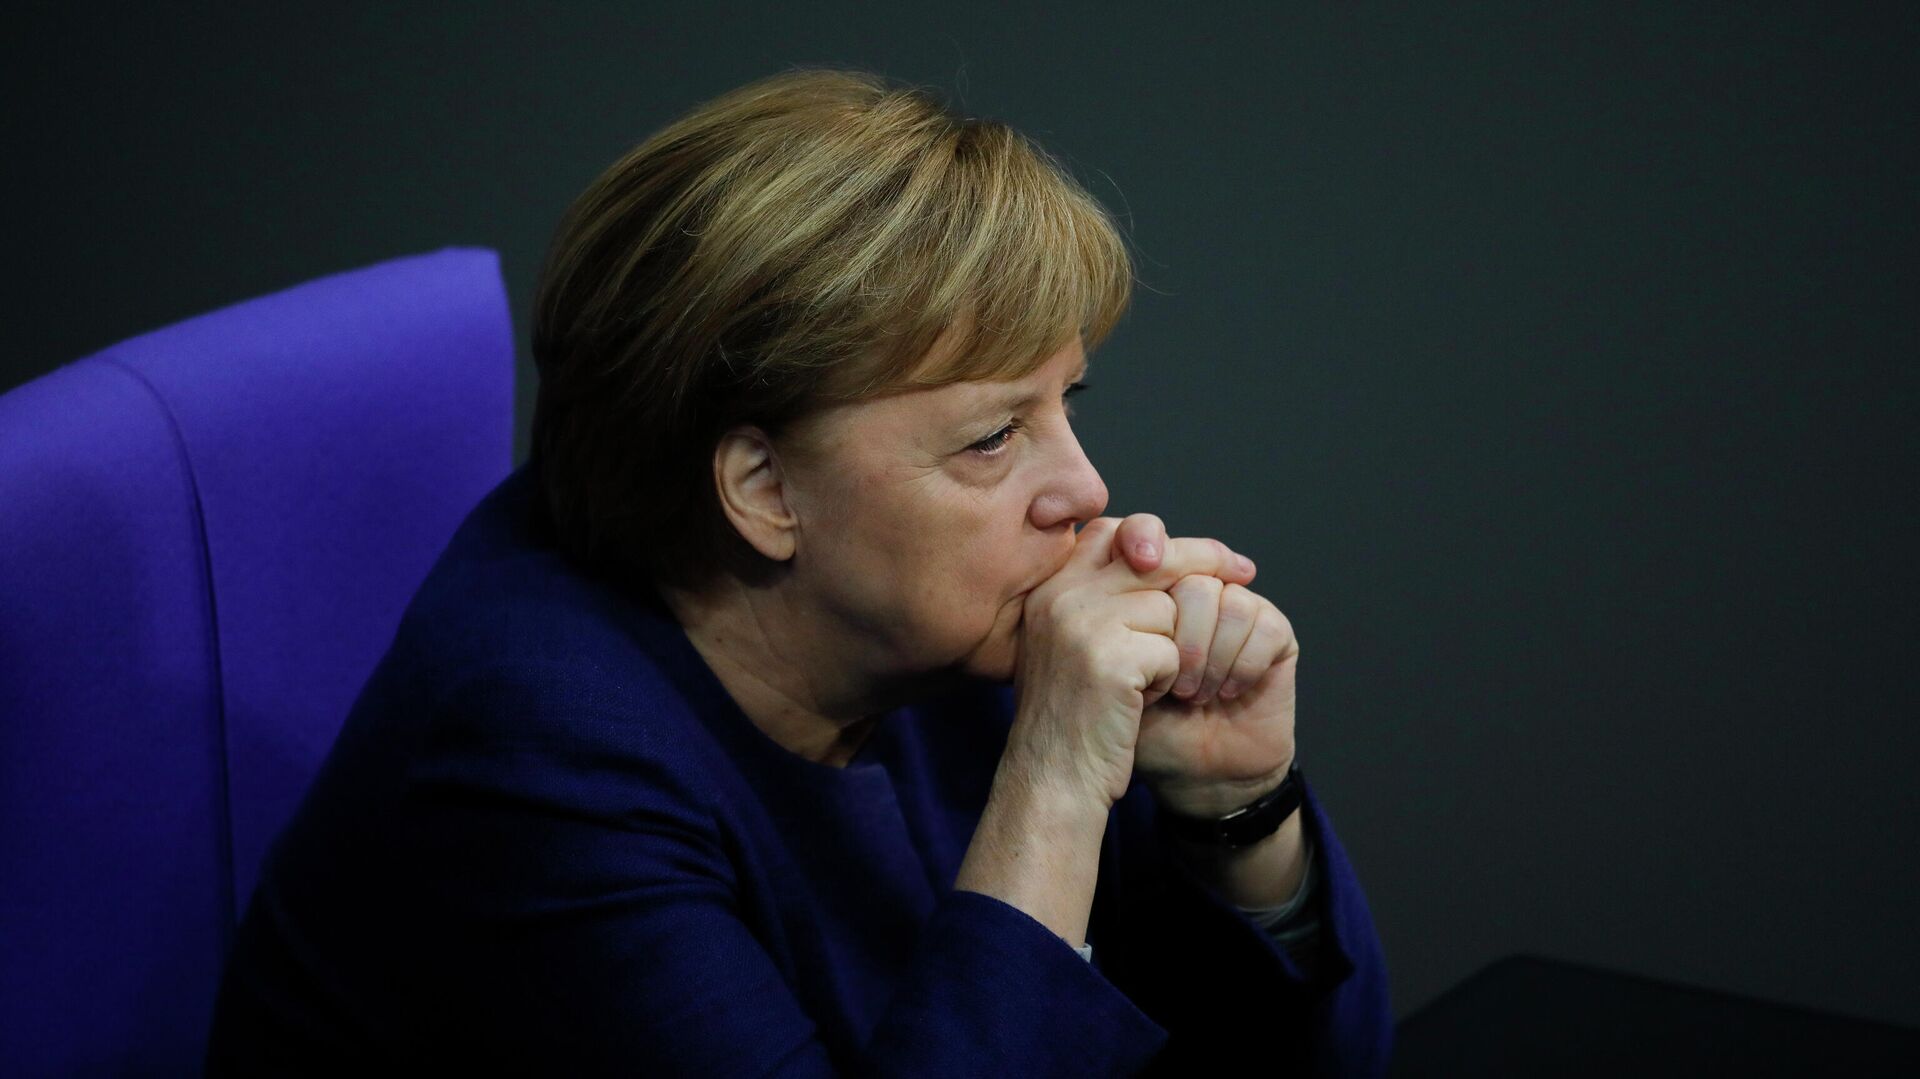 Канцлер Германи Ангела Меркель в Бундестаге, Берлин  - РИА Новости, 1920, 16.03.2021